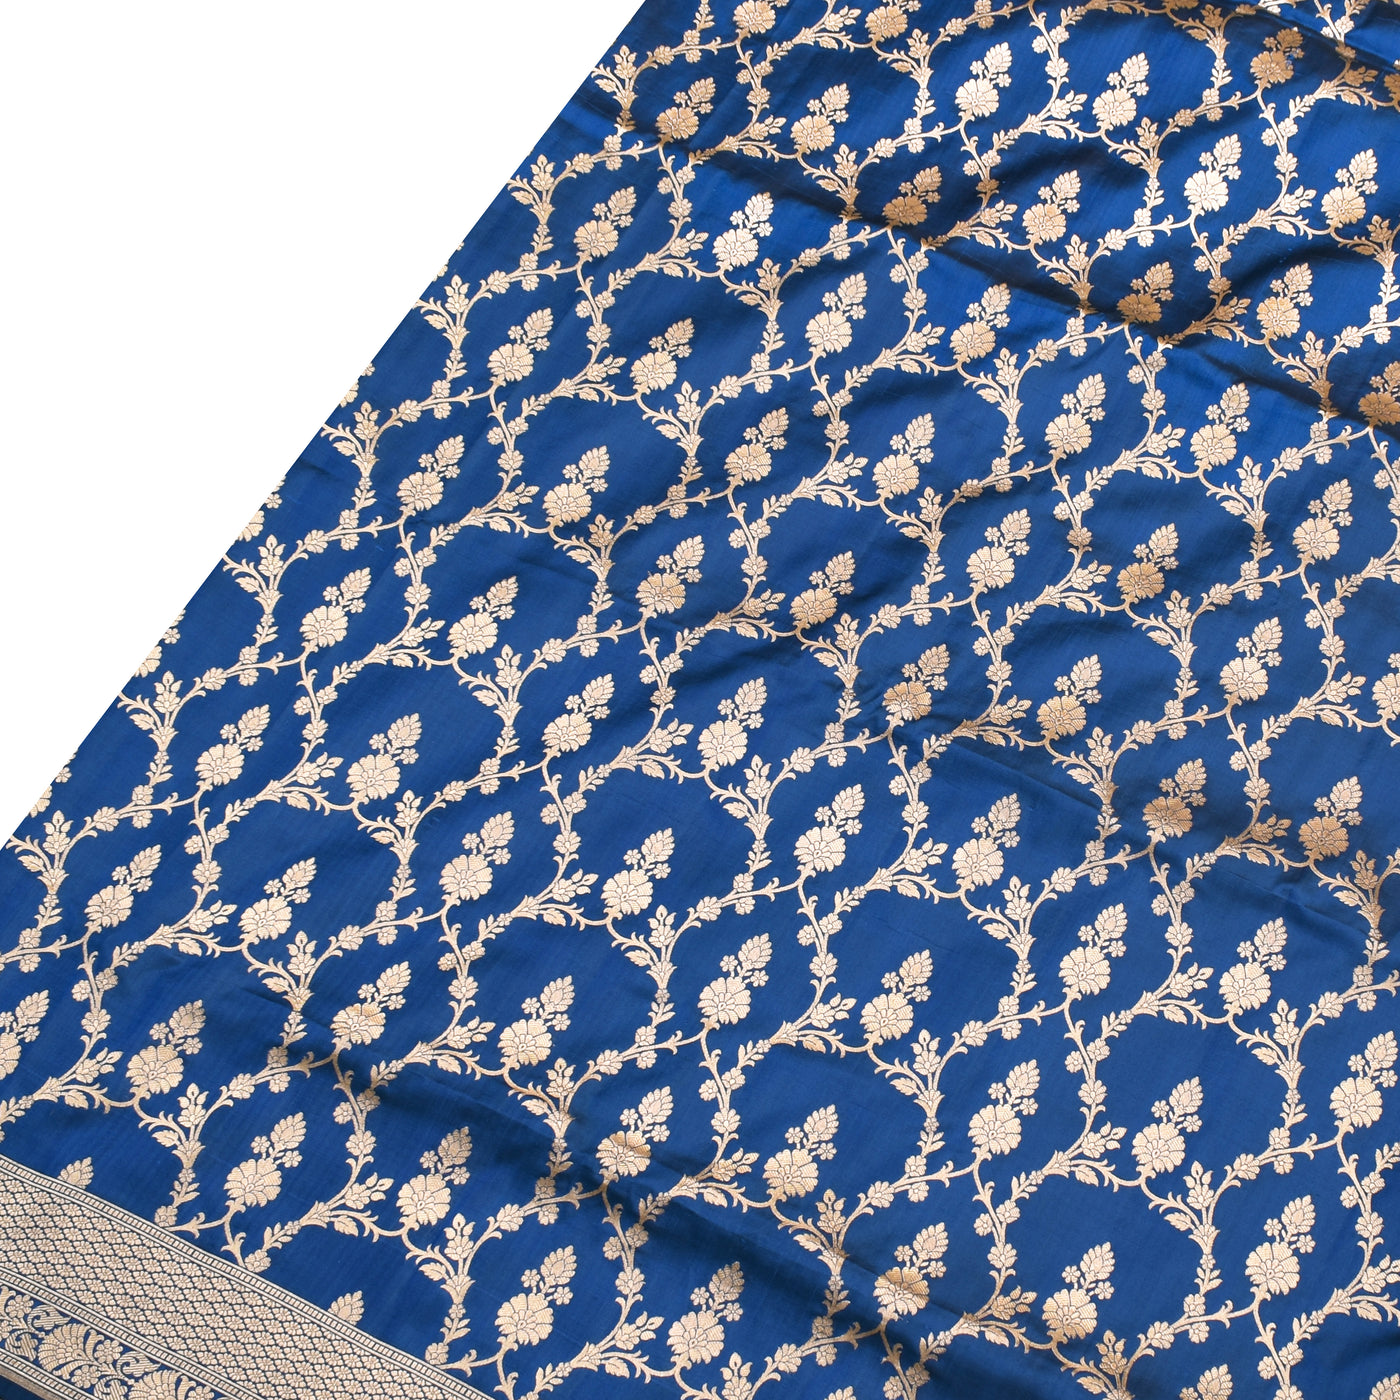 Royal Blue Banarasi Silk Saree with Zari Creeper Design